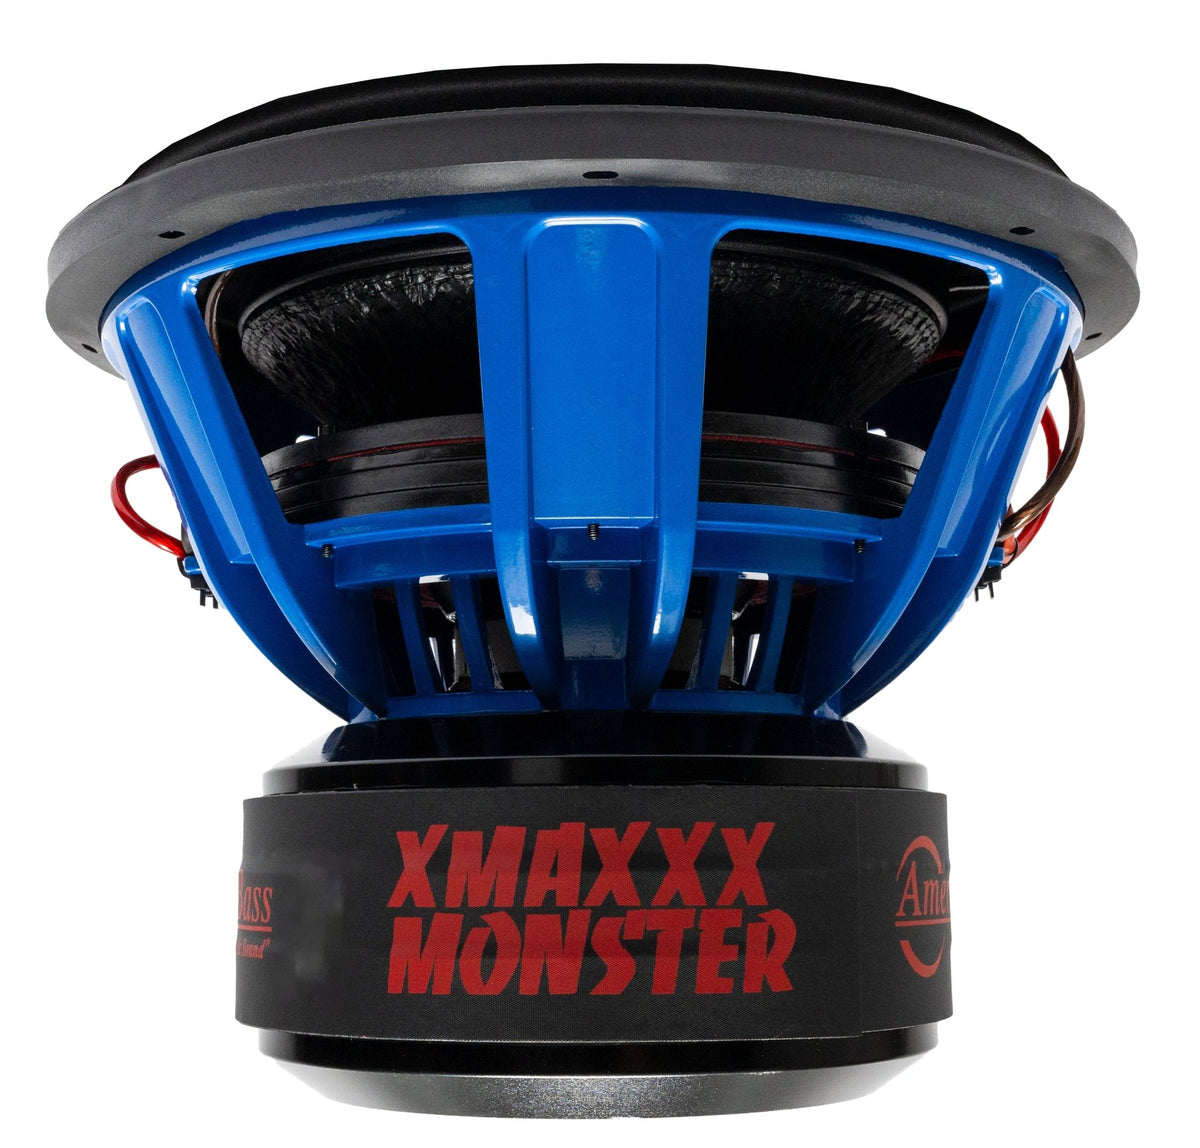 XMAXXX Monster 15" Subwoofer - American Bass Audio